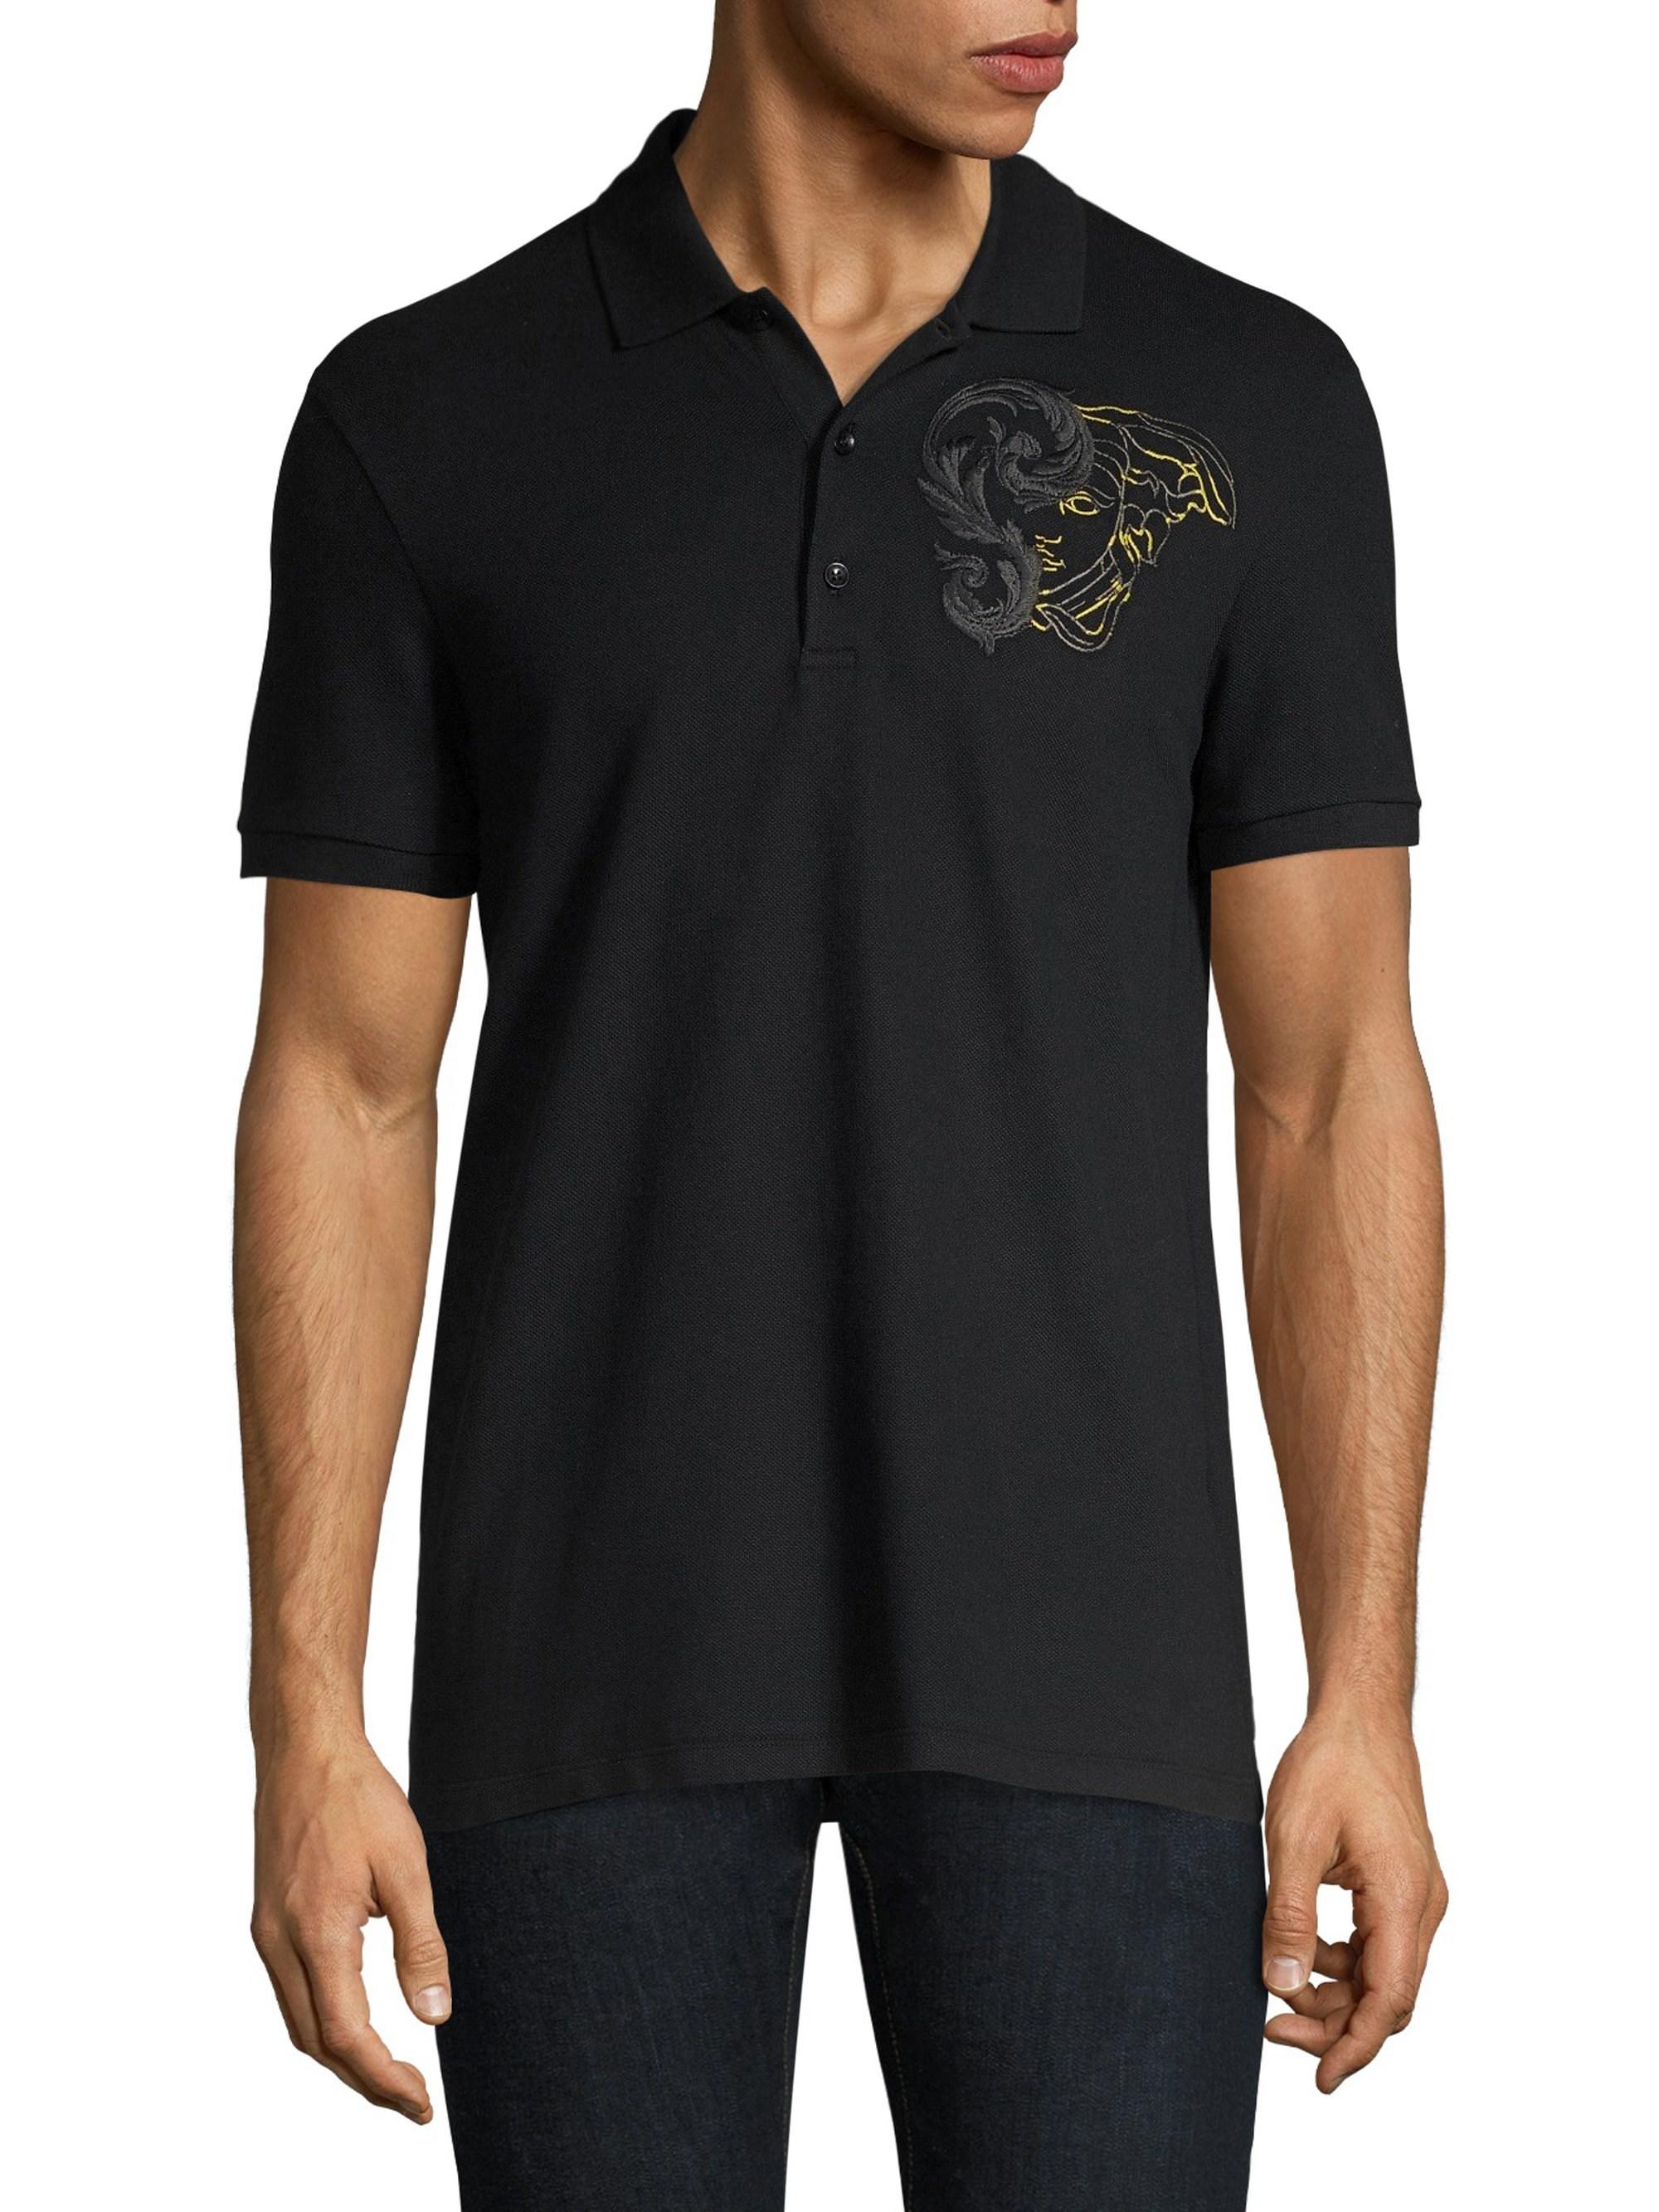 Gianni Versace Tshirt Medusa Logo, Men's Fashion, Tops & Sets, Tshirts &  Polo Shirts on Carousell